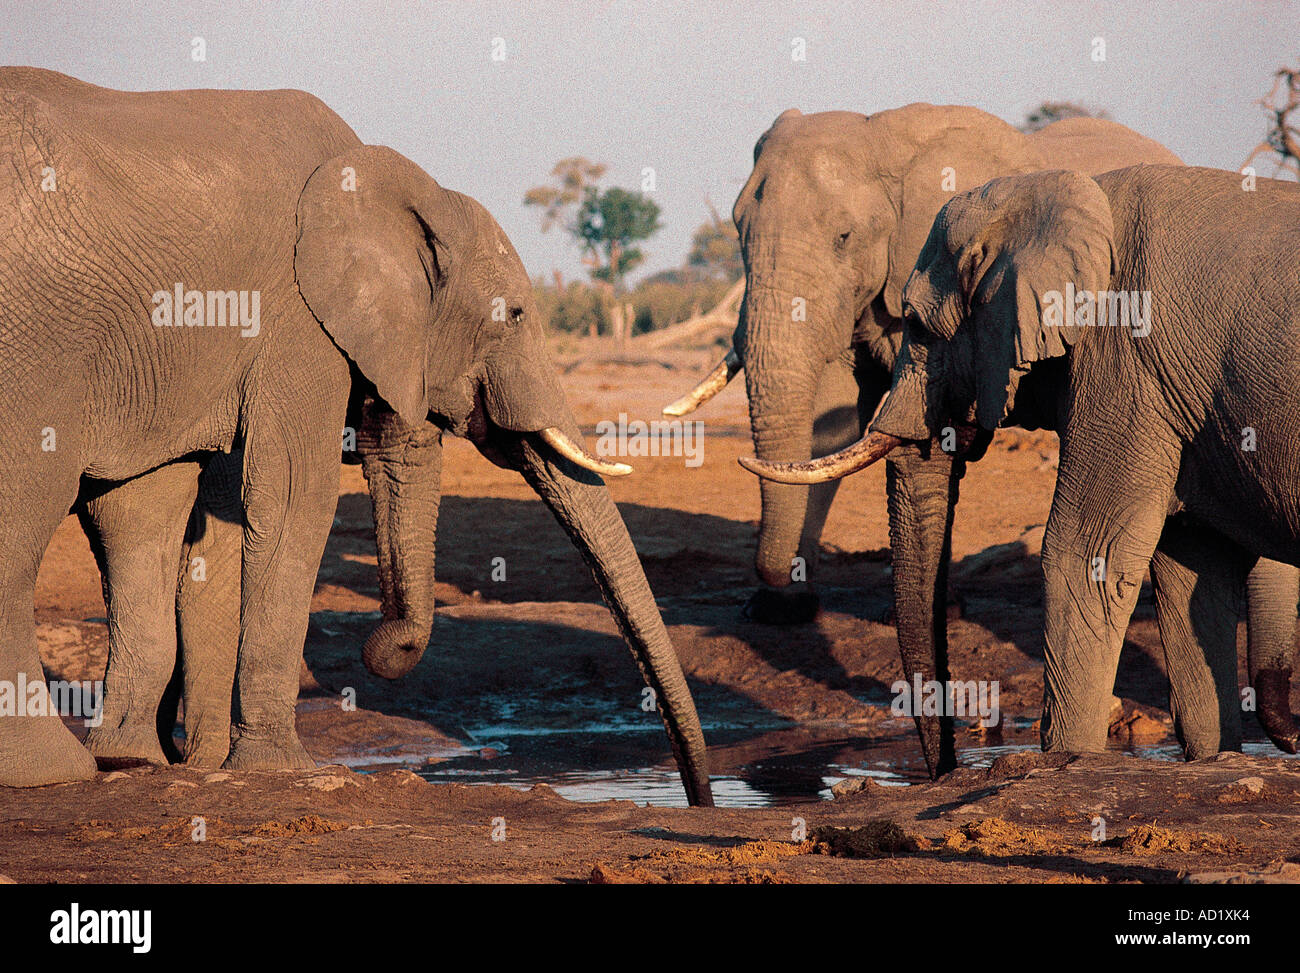 Quatre éléphants bull matures partageant un point d'eau du sud de l'Afrique du Sud Botswana Savuti Banque D'Images